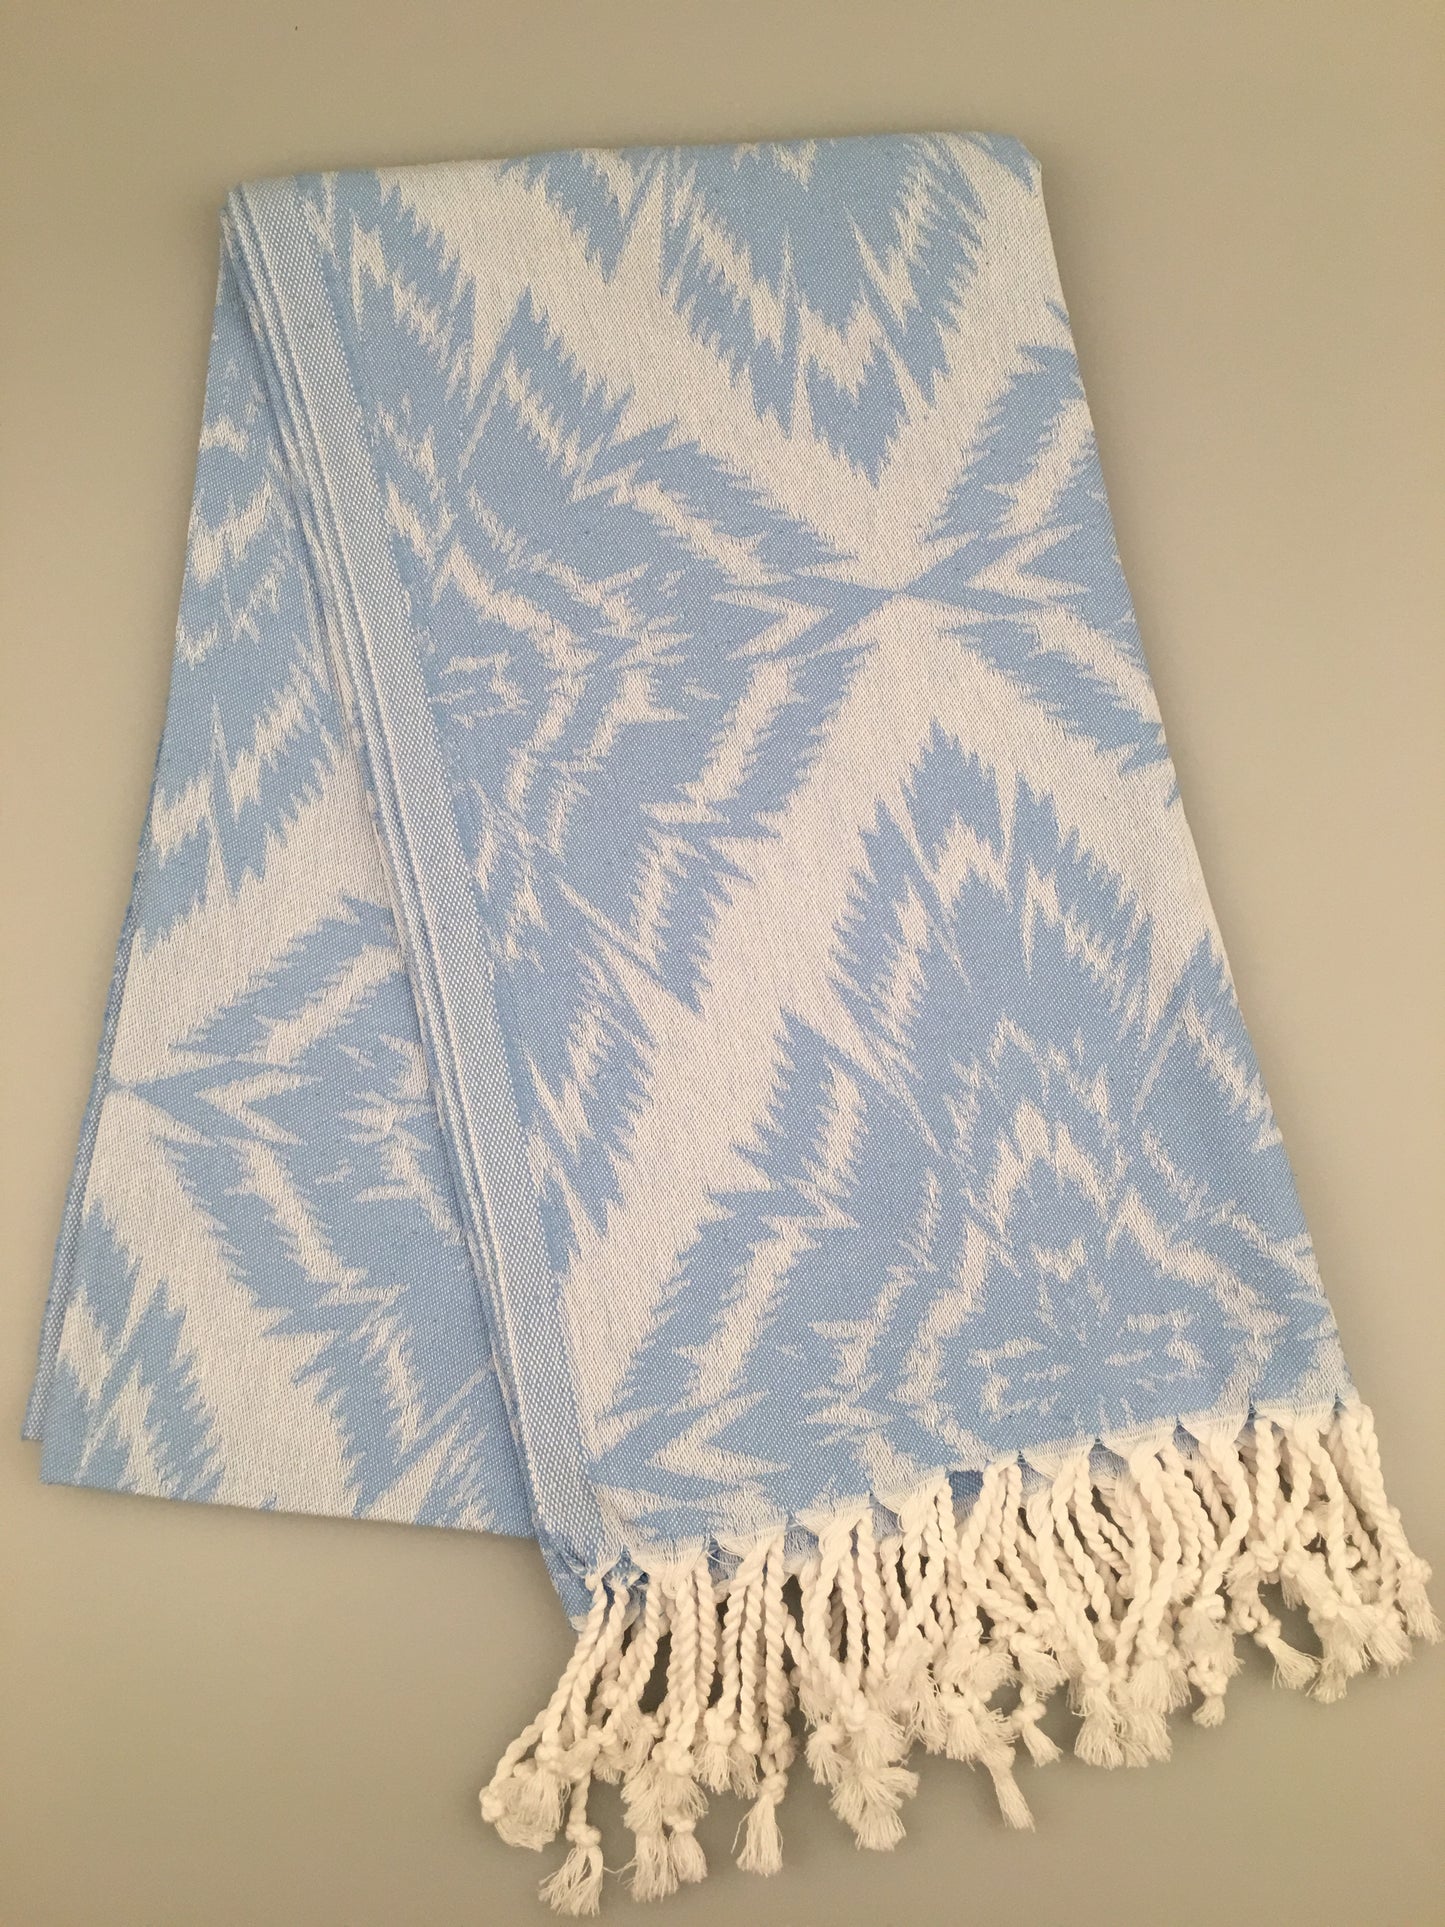 200pcs/LOT Larisa Turkish Towel Jacquard Peshtemal (300g / 400g) - Wholesale Price